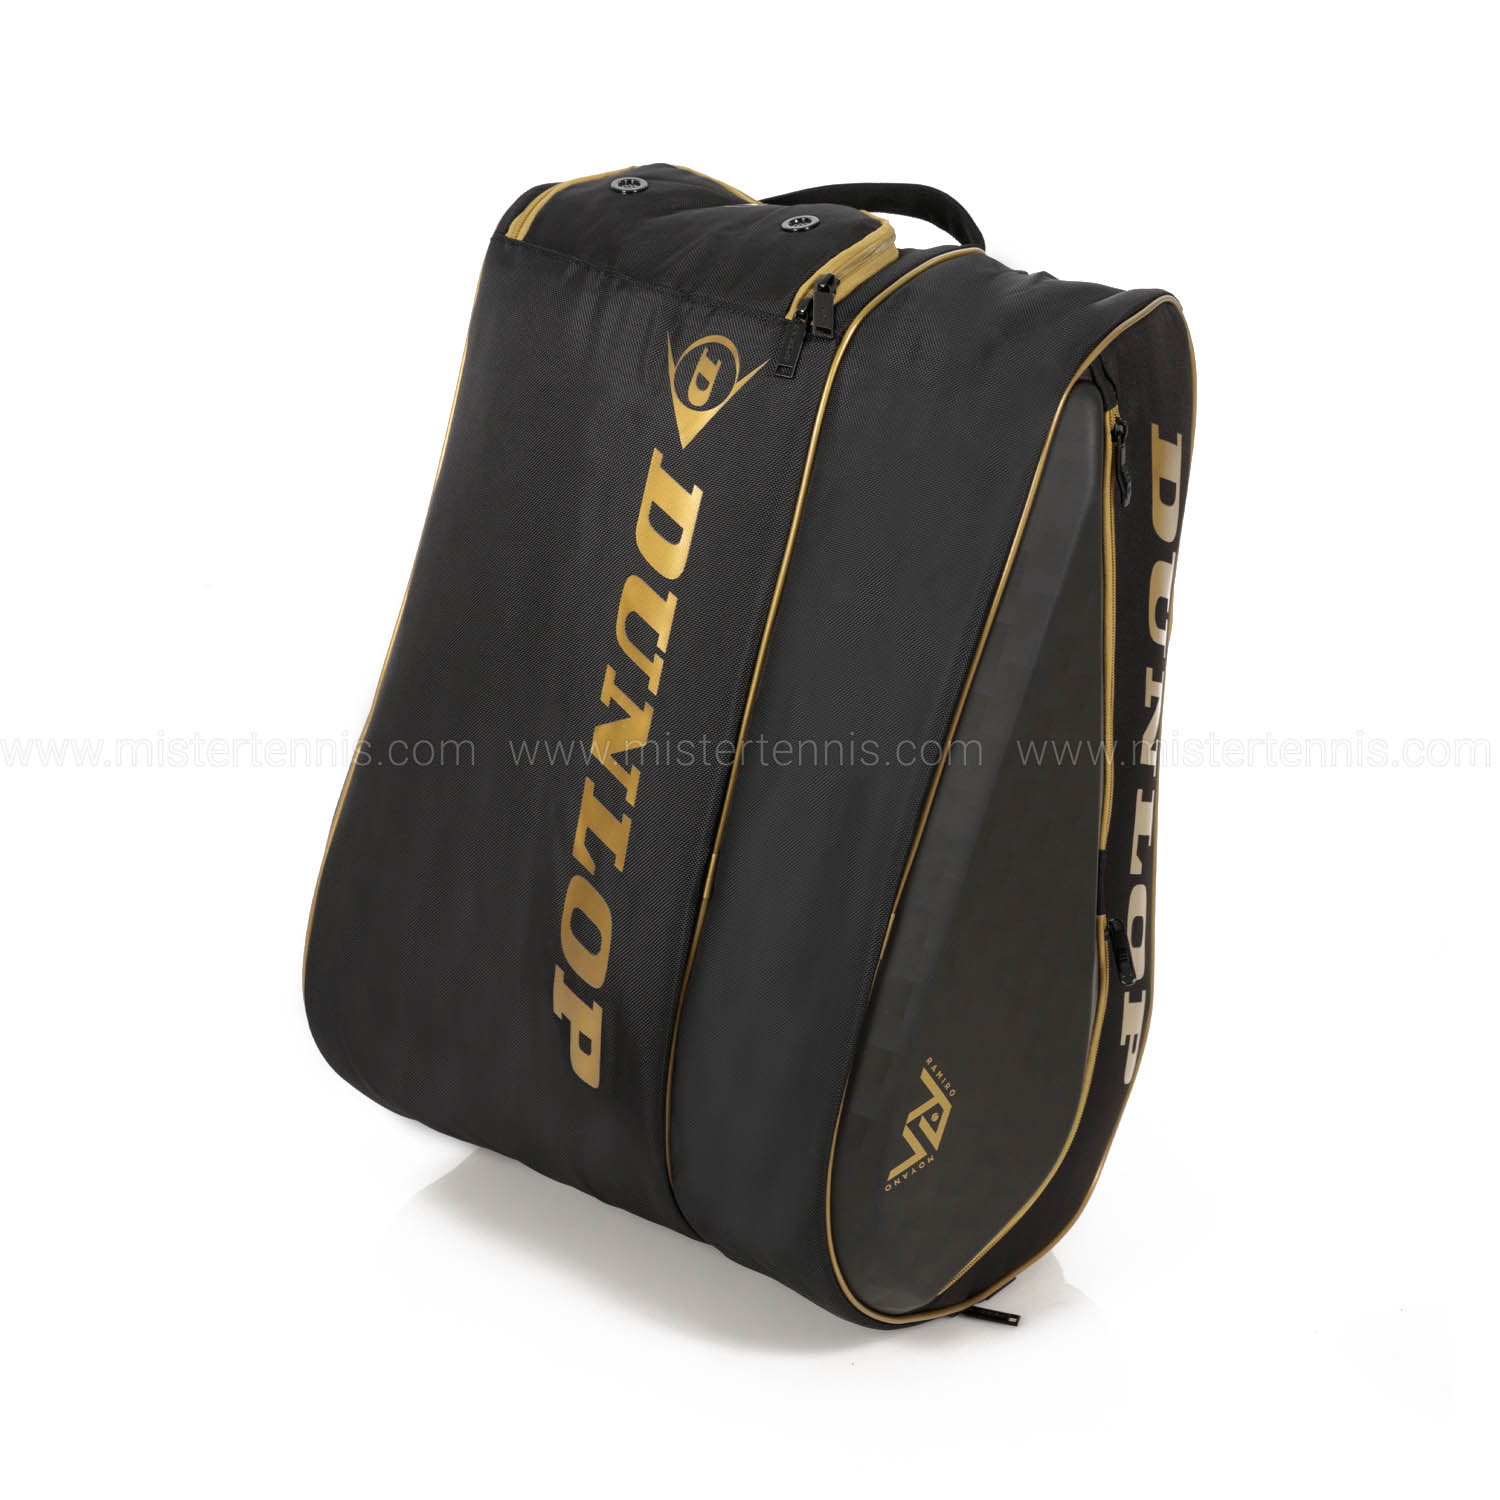 Dunlop Elite Thermo Borsa - Black/Gold